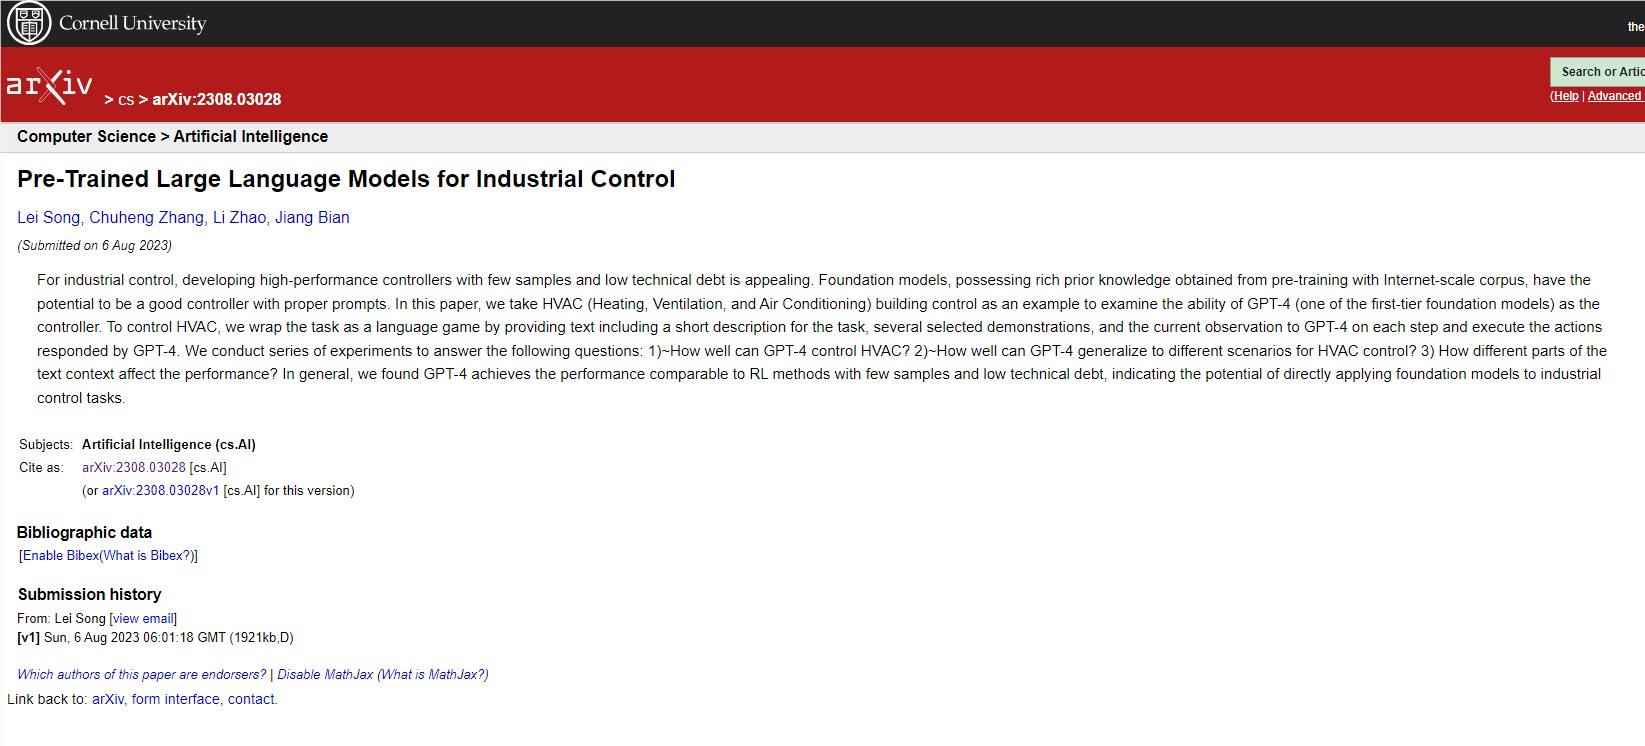 微软亚洲研究院提出可以将 LLM 用于工业控制 直接用GPT-4控制空调